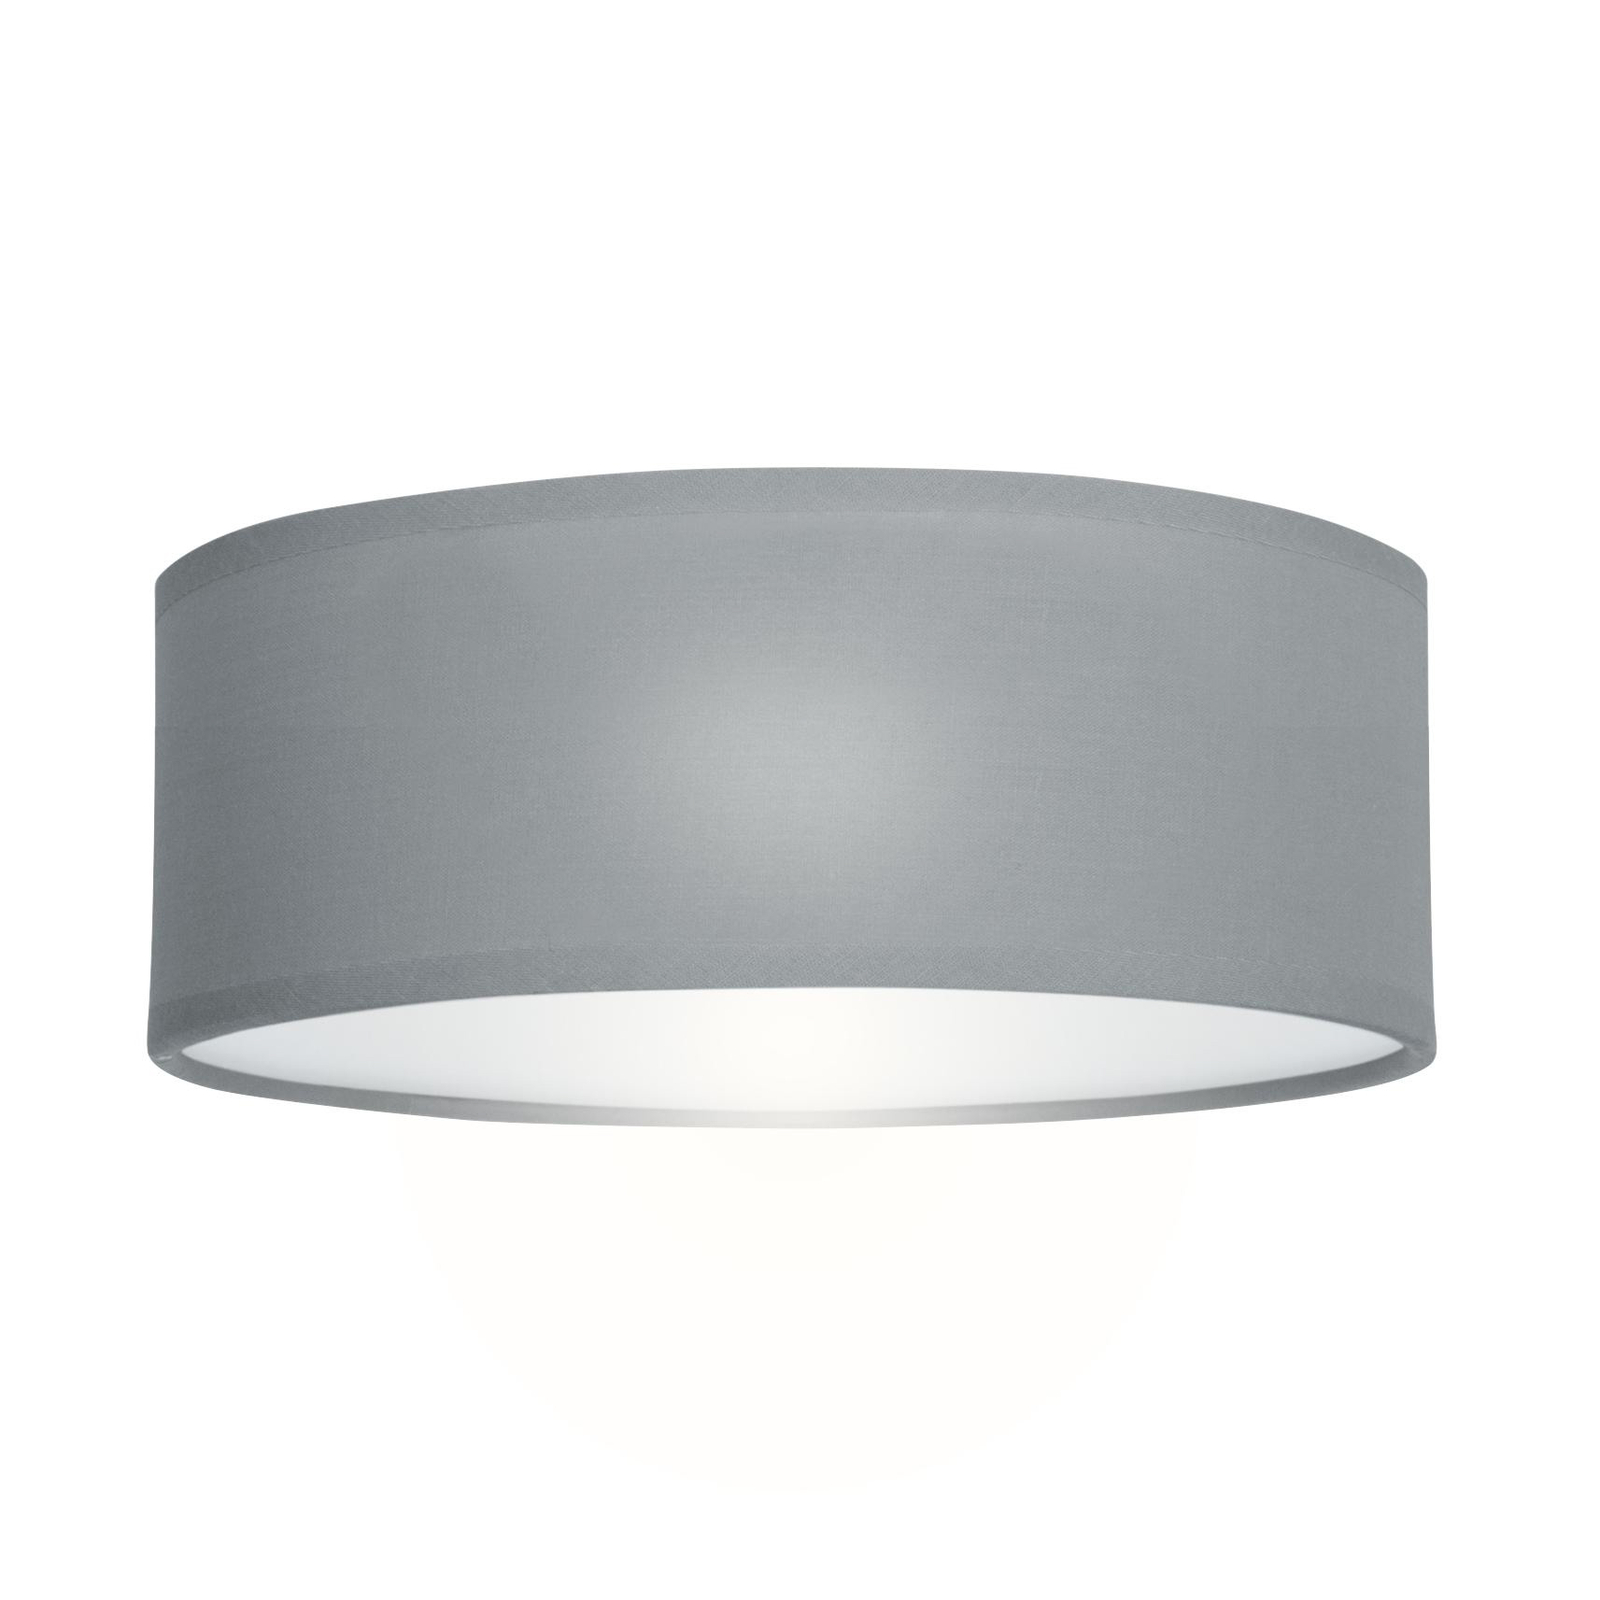 Taklampe Taklampe Dream, Ø 30 cm, tekstil, grå